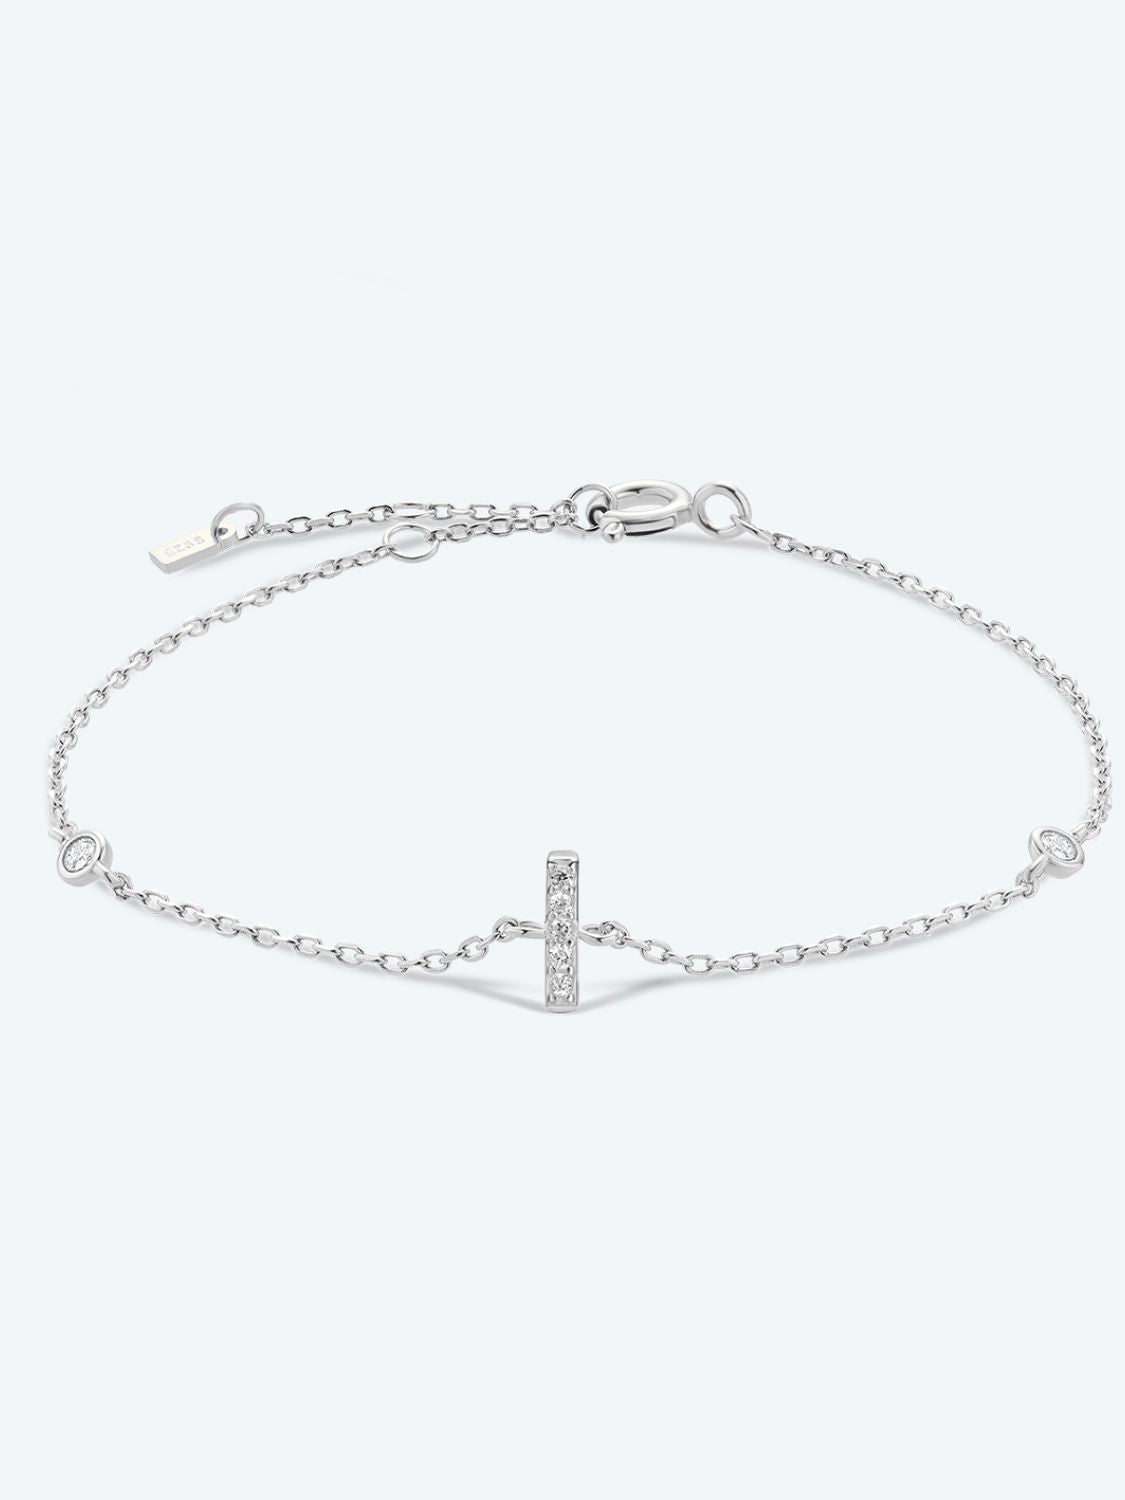 Zircon 925 Sterling Silver Bracelet - I-Silver / One Size - Women’s Jewelry - Bracelets - 16 - 2024